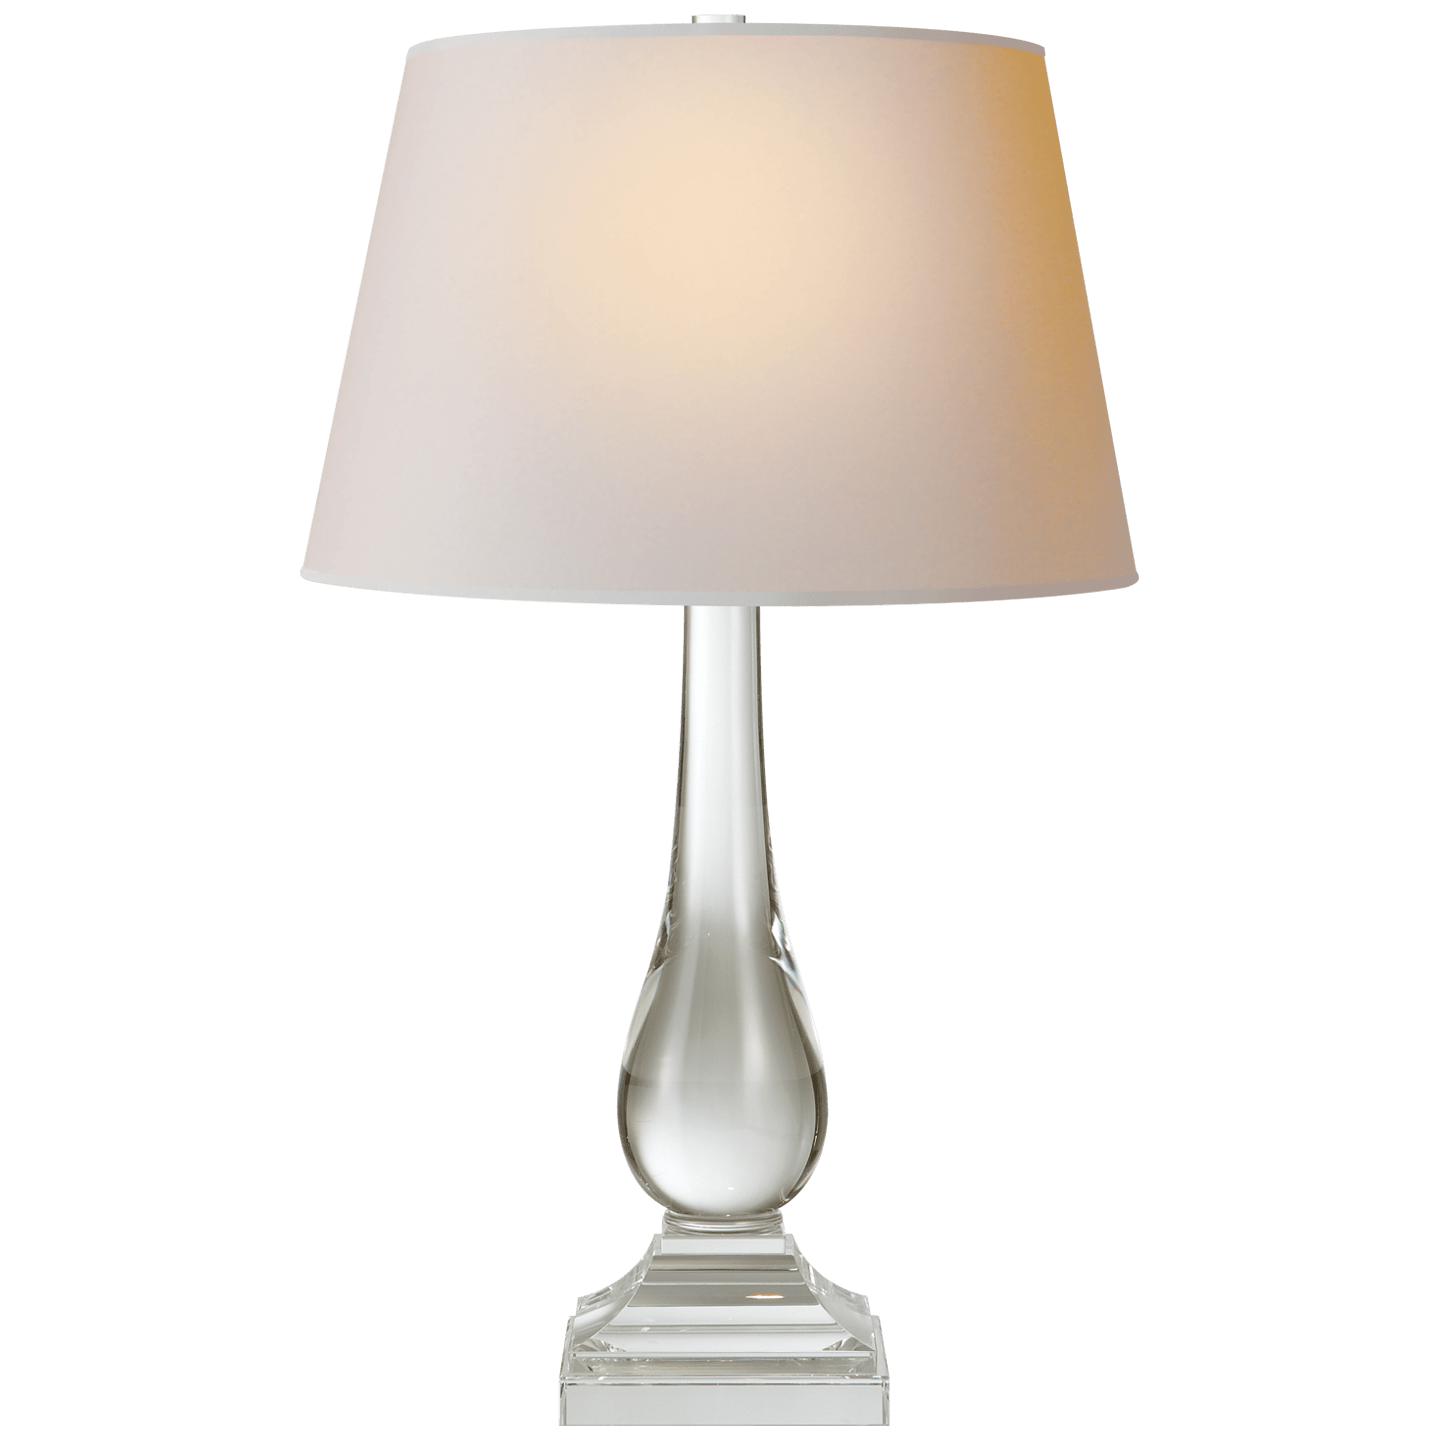 Купить Настольная лампа Modern Balustrade Table Lamp в интернет-магазине roooms.ru